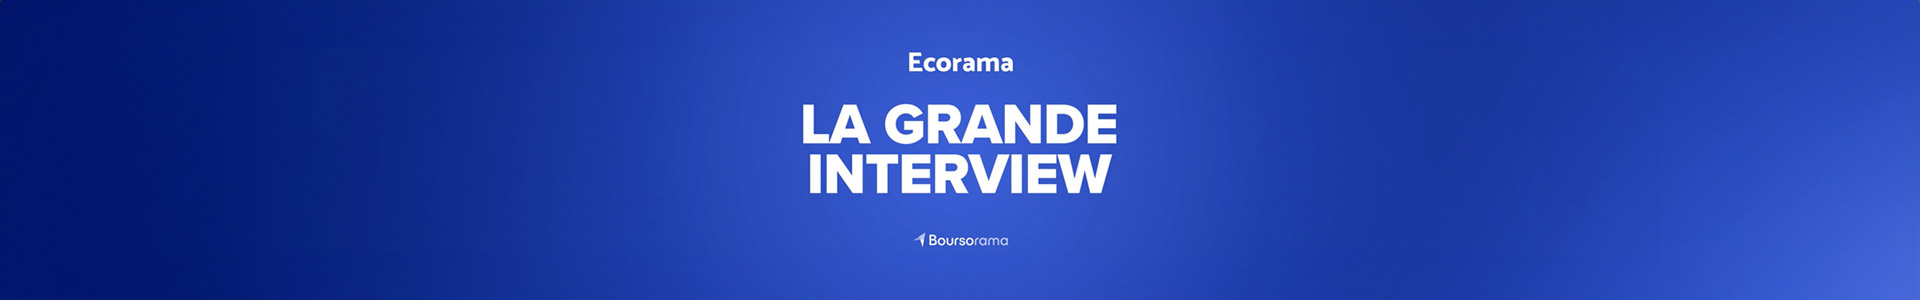 Emmanuel de Geuser, Directeur Général du groupe Vivalto Santé, était l'invité de l'émission Ecorama sur Boursorama.com.